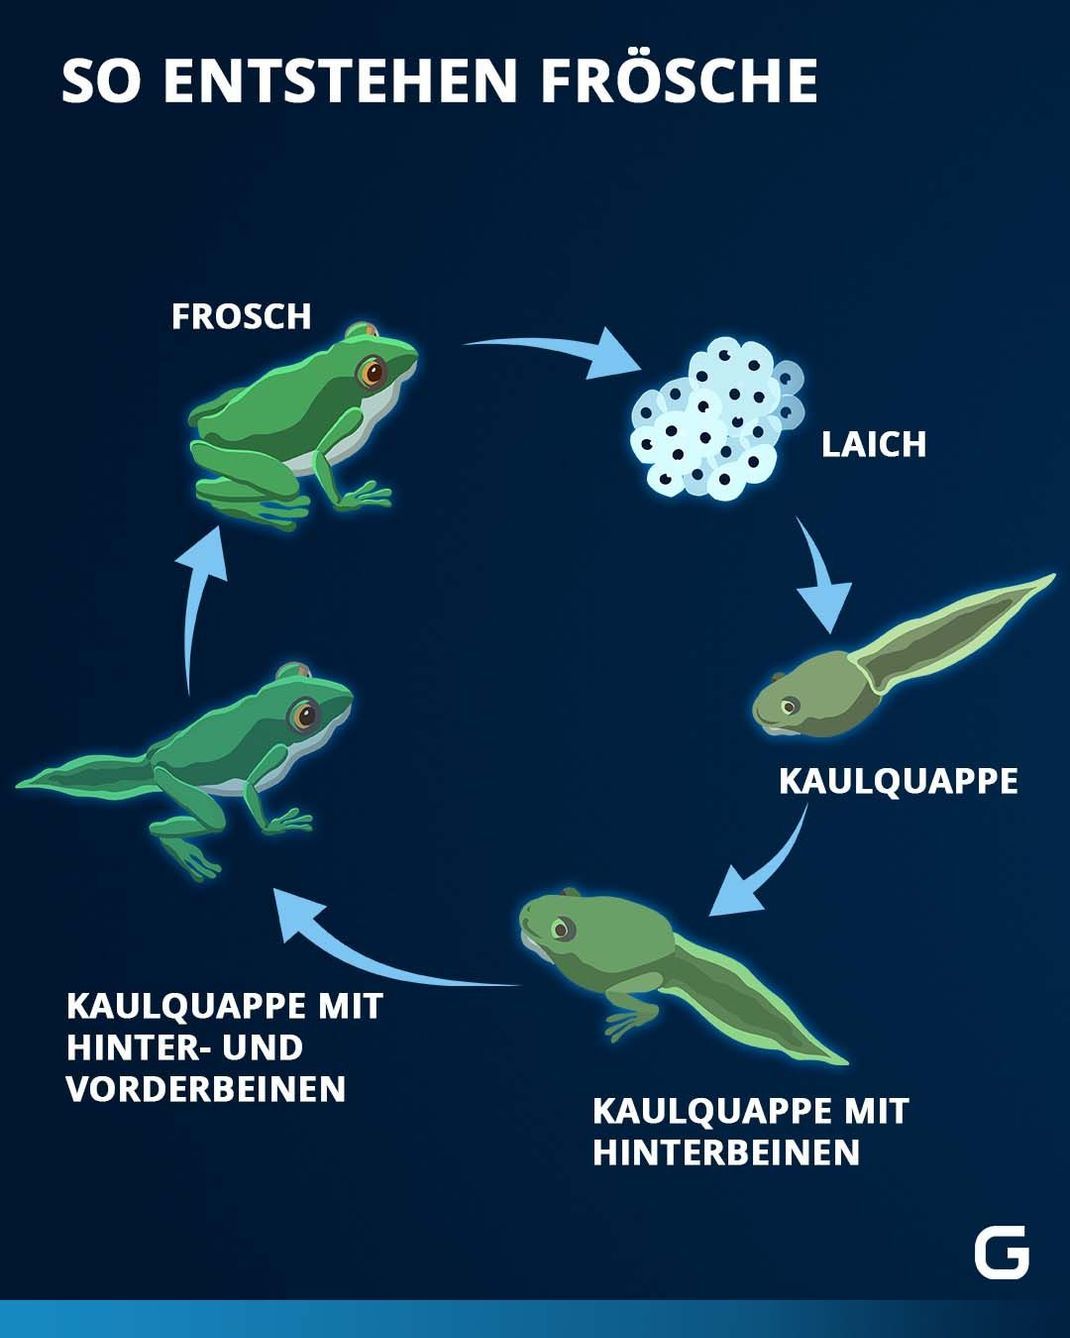 Der Lebenszyklus von Kaulquappen und Fröschen